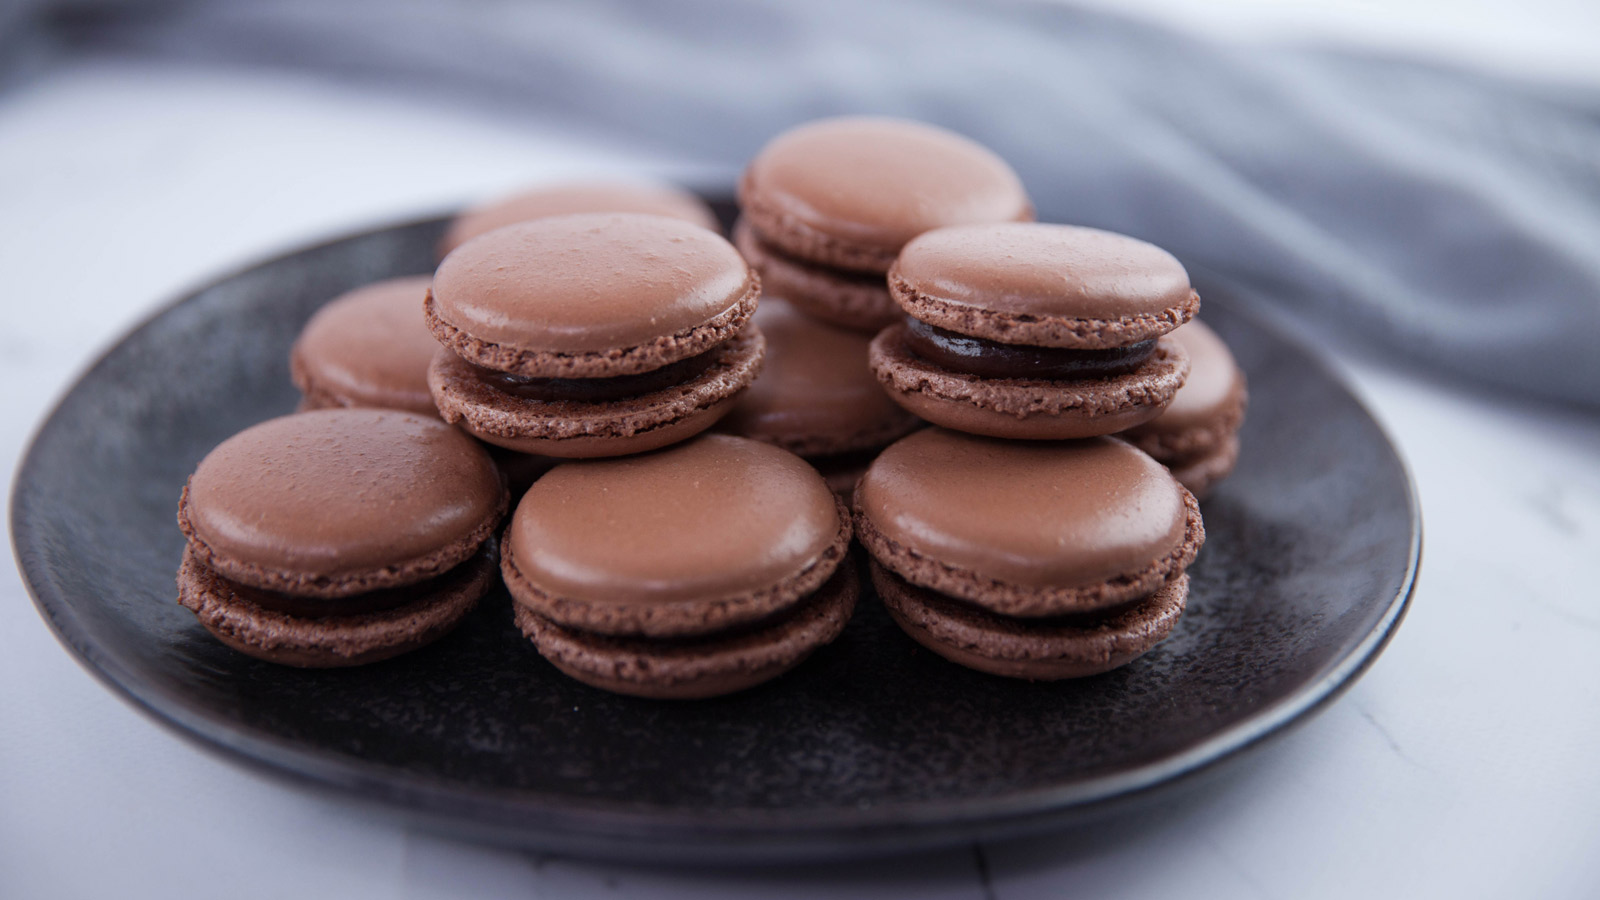 Macarons de chocolate (Chocolate macaron) - Kirsten Tibballs - Receta -  Canal Cocina